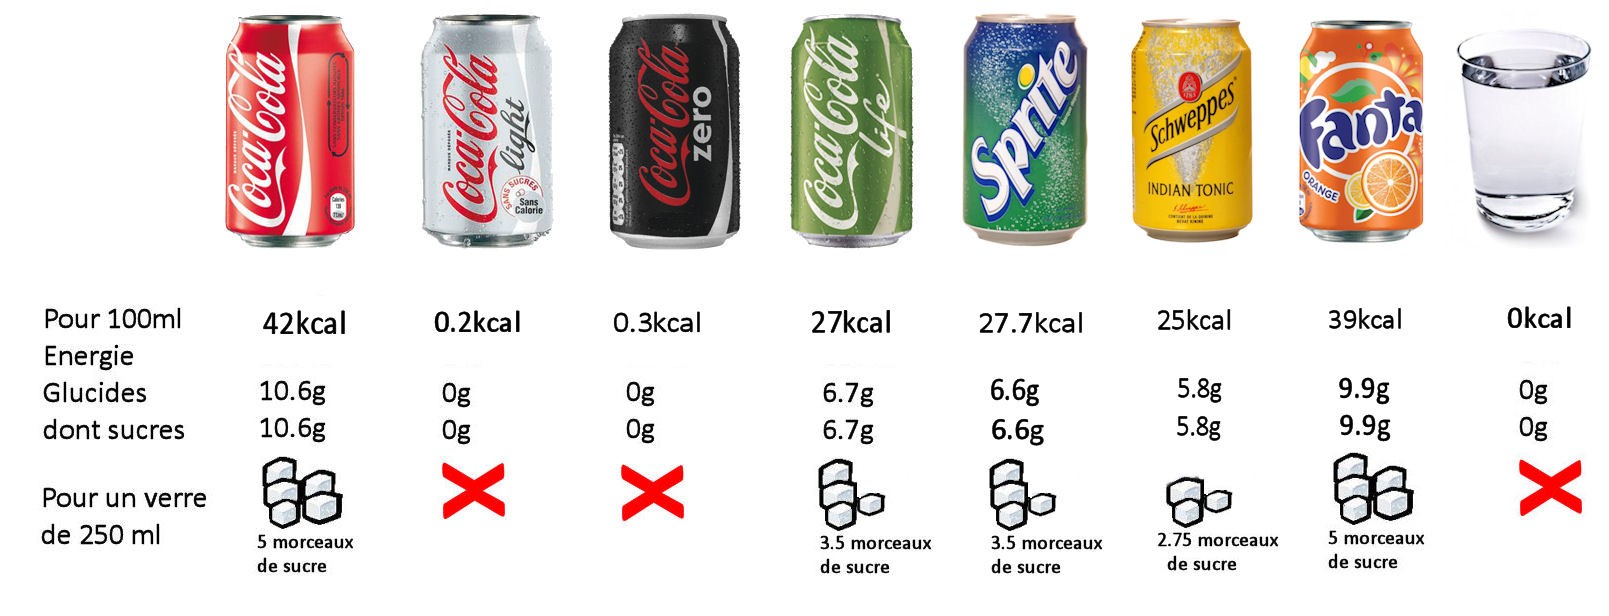 Infographie sur les boissons